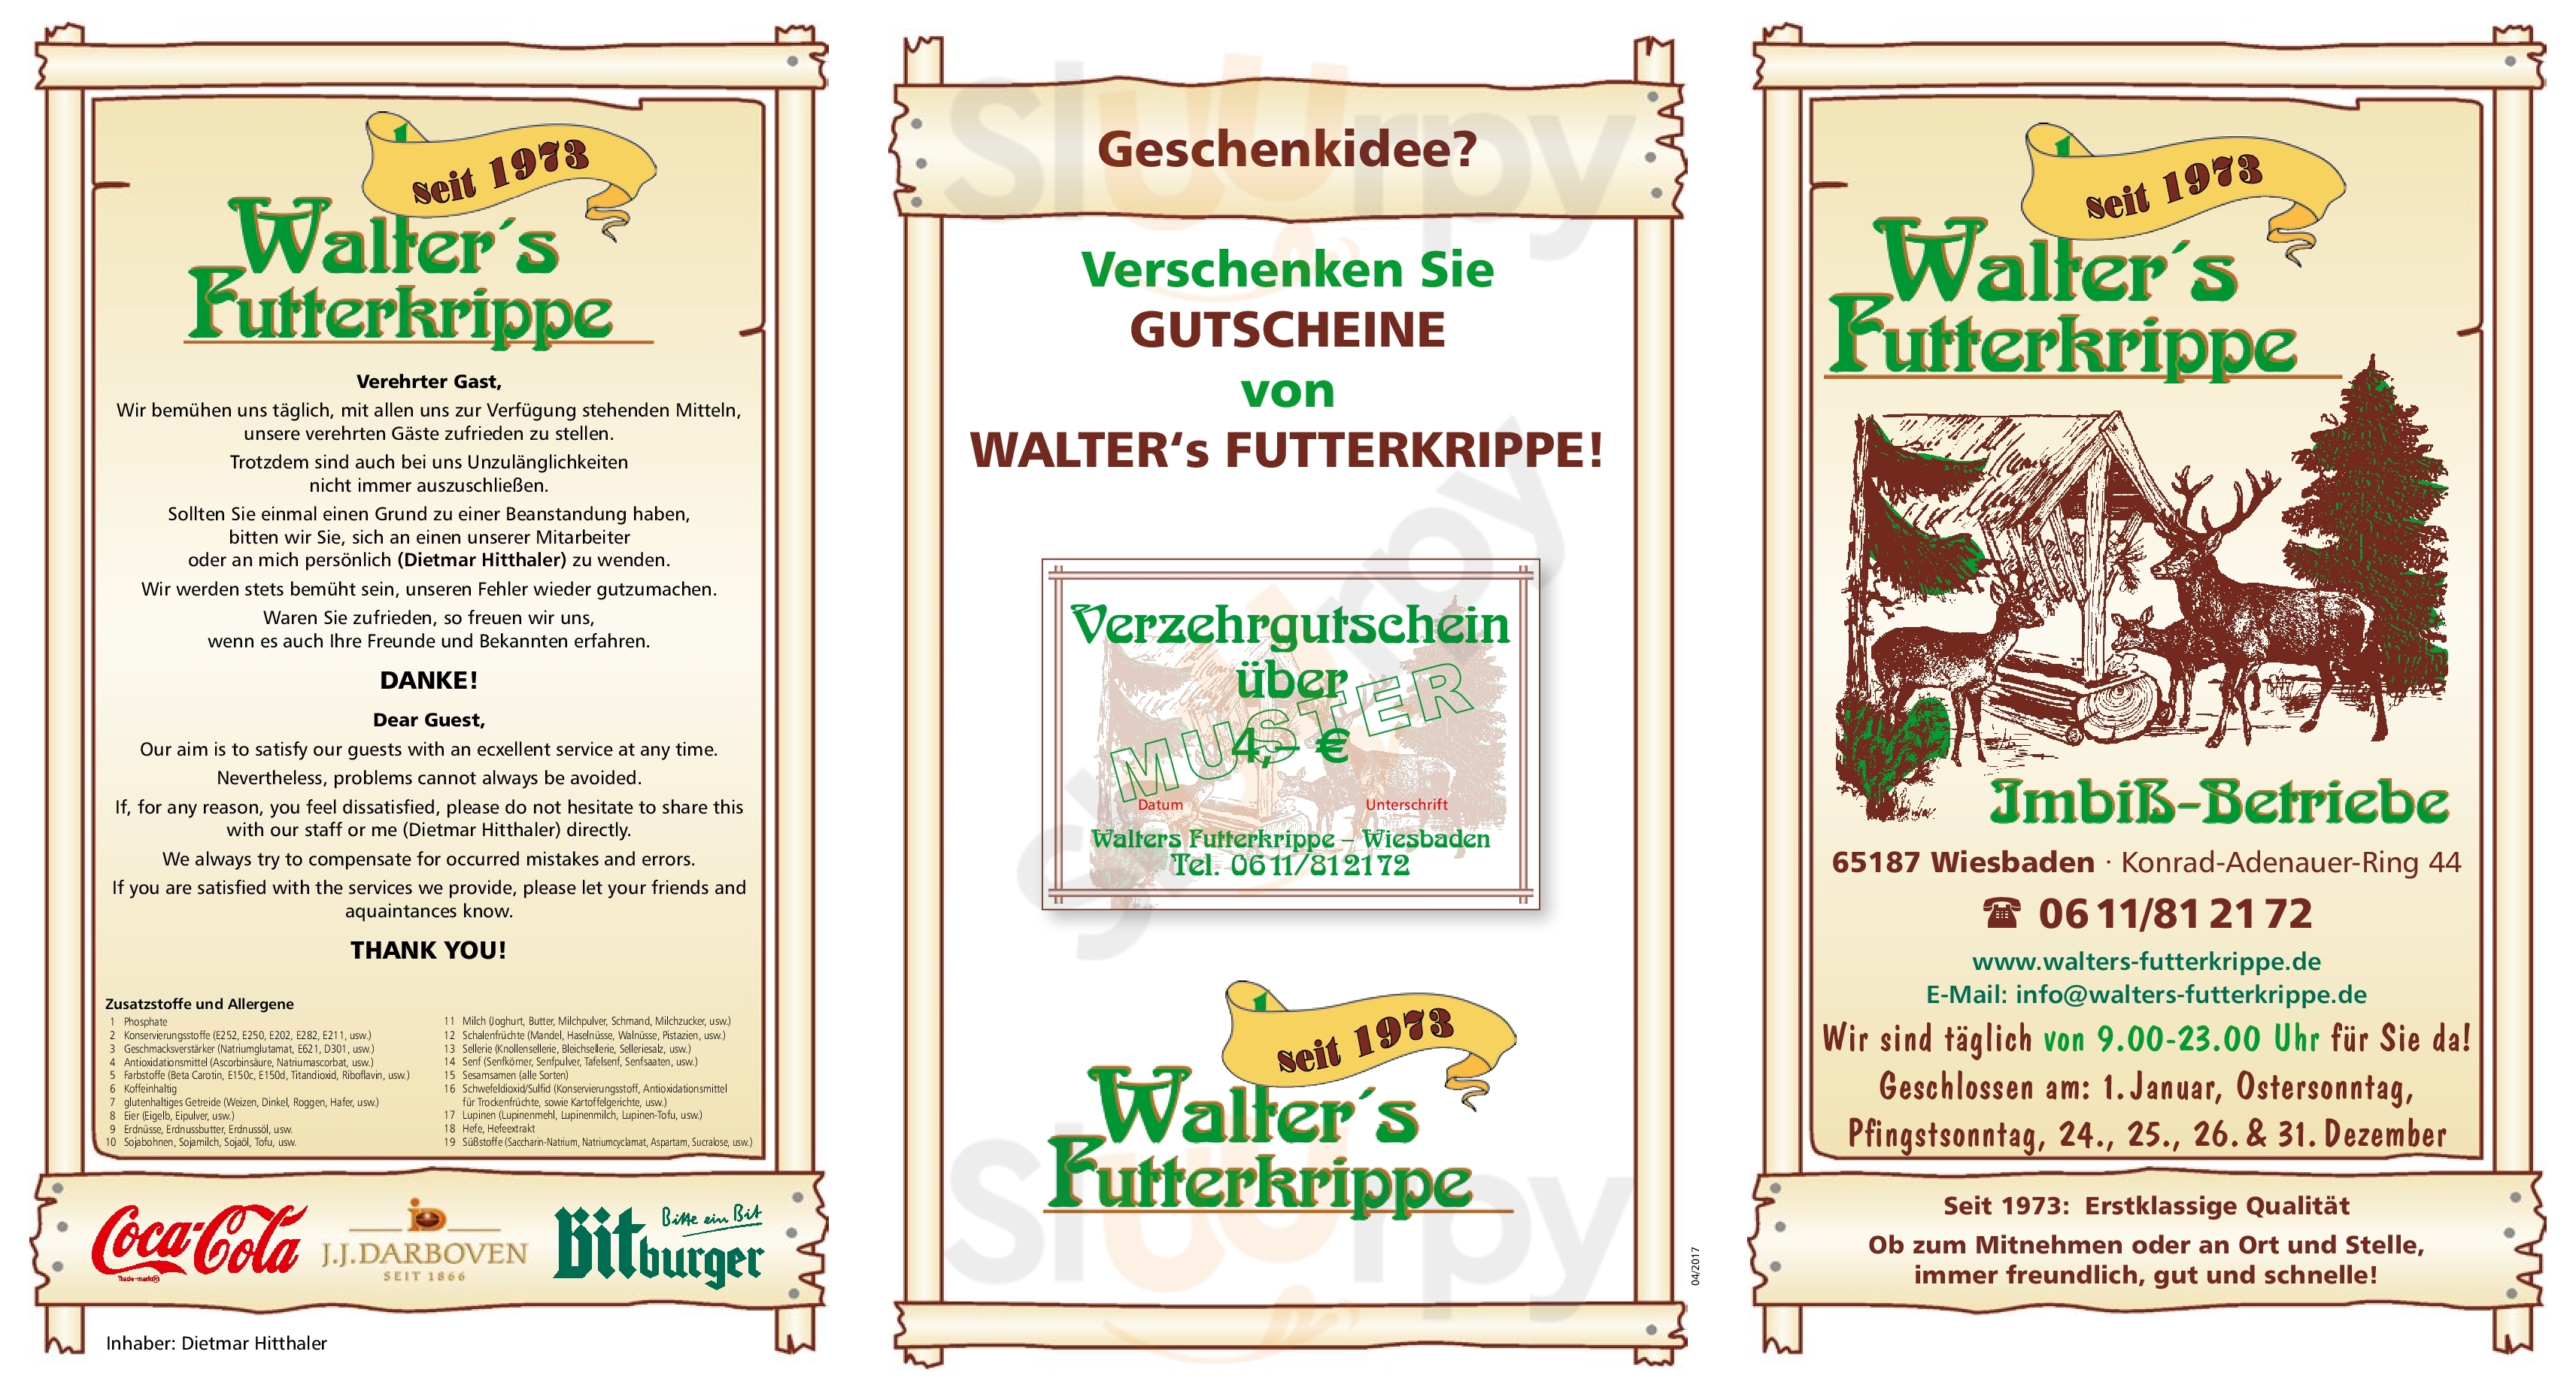 Walter's Futterkrippe Wiesbaden Menu - 1